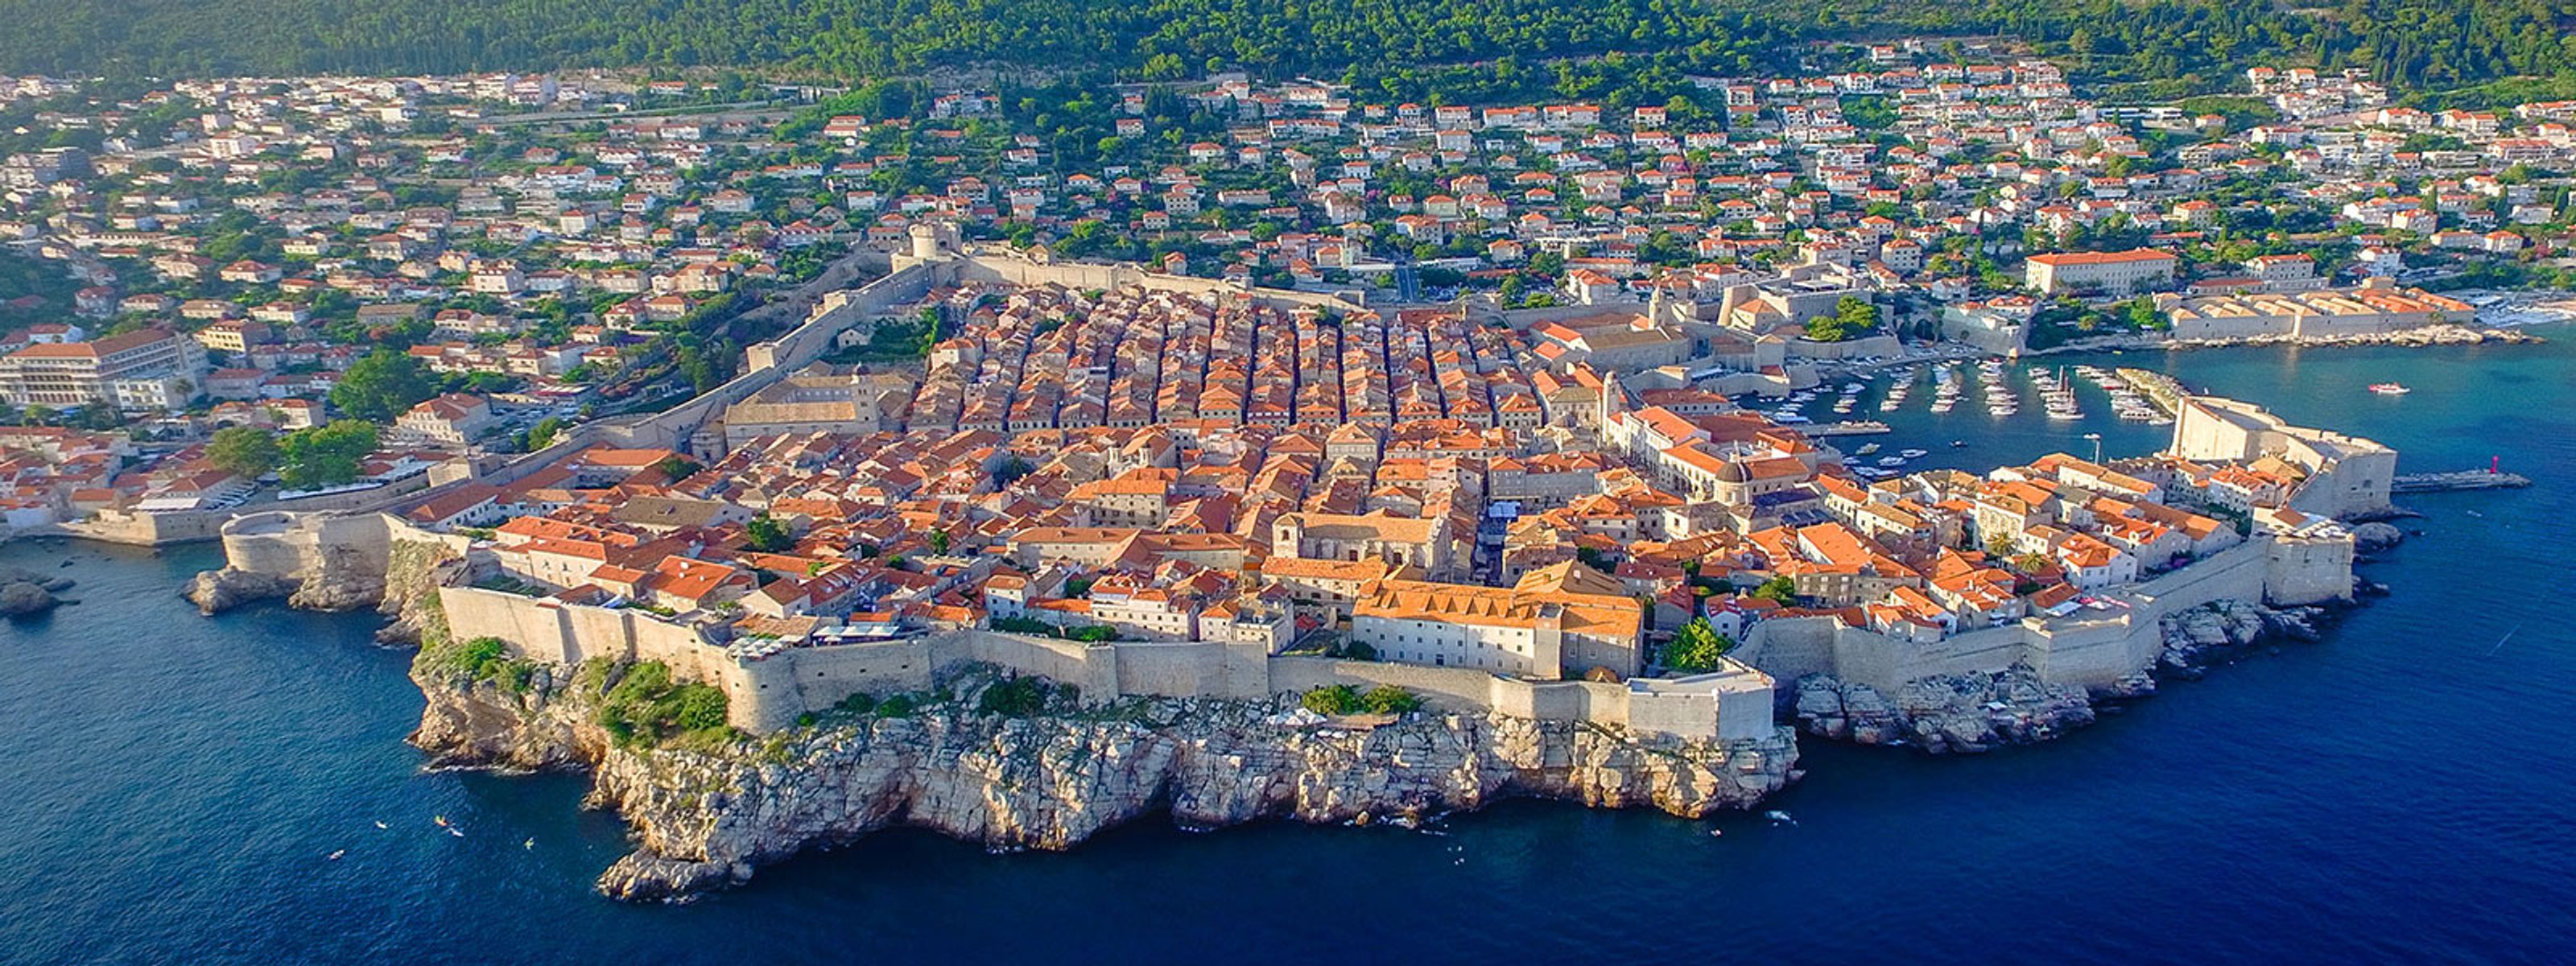 Dubrovnik aus der Vogelperspektive mit seiner Stadtmauer